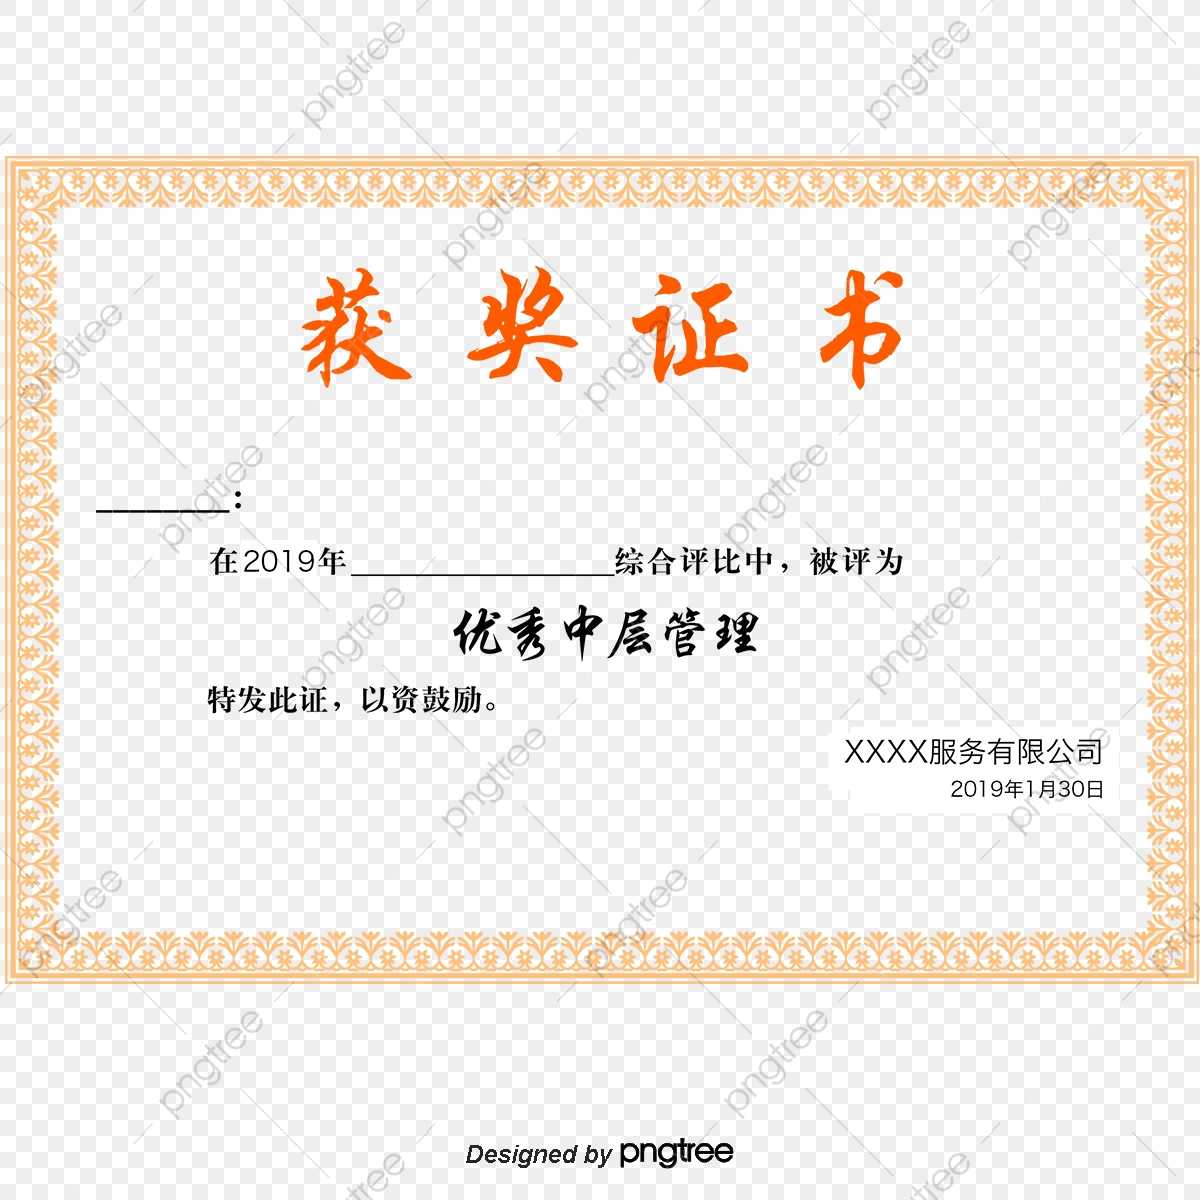 Certificate Of Cross Plate, Certificate Vector, Cross Vector With Crossing The Line Certificate Template